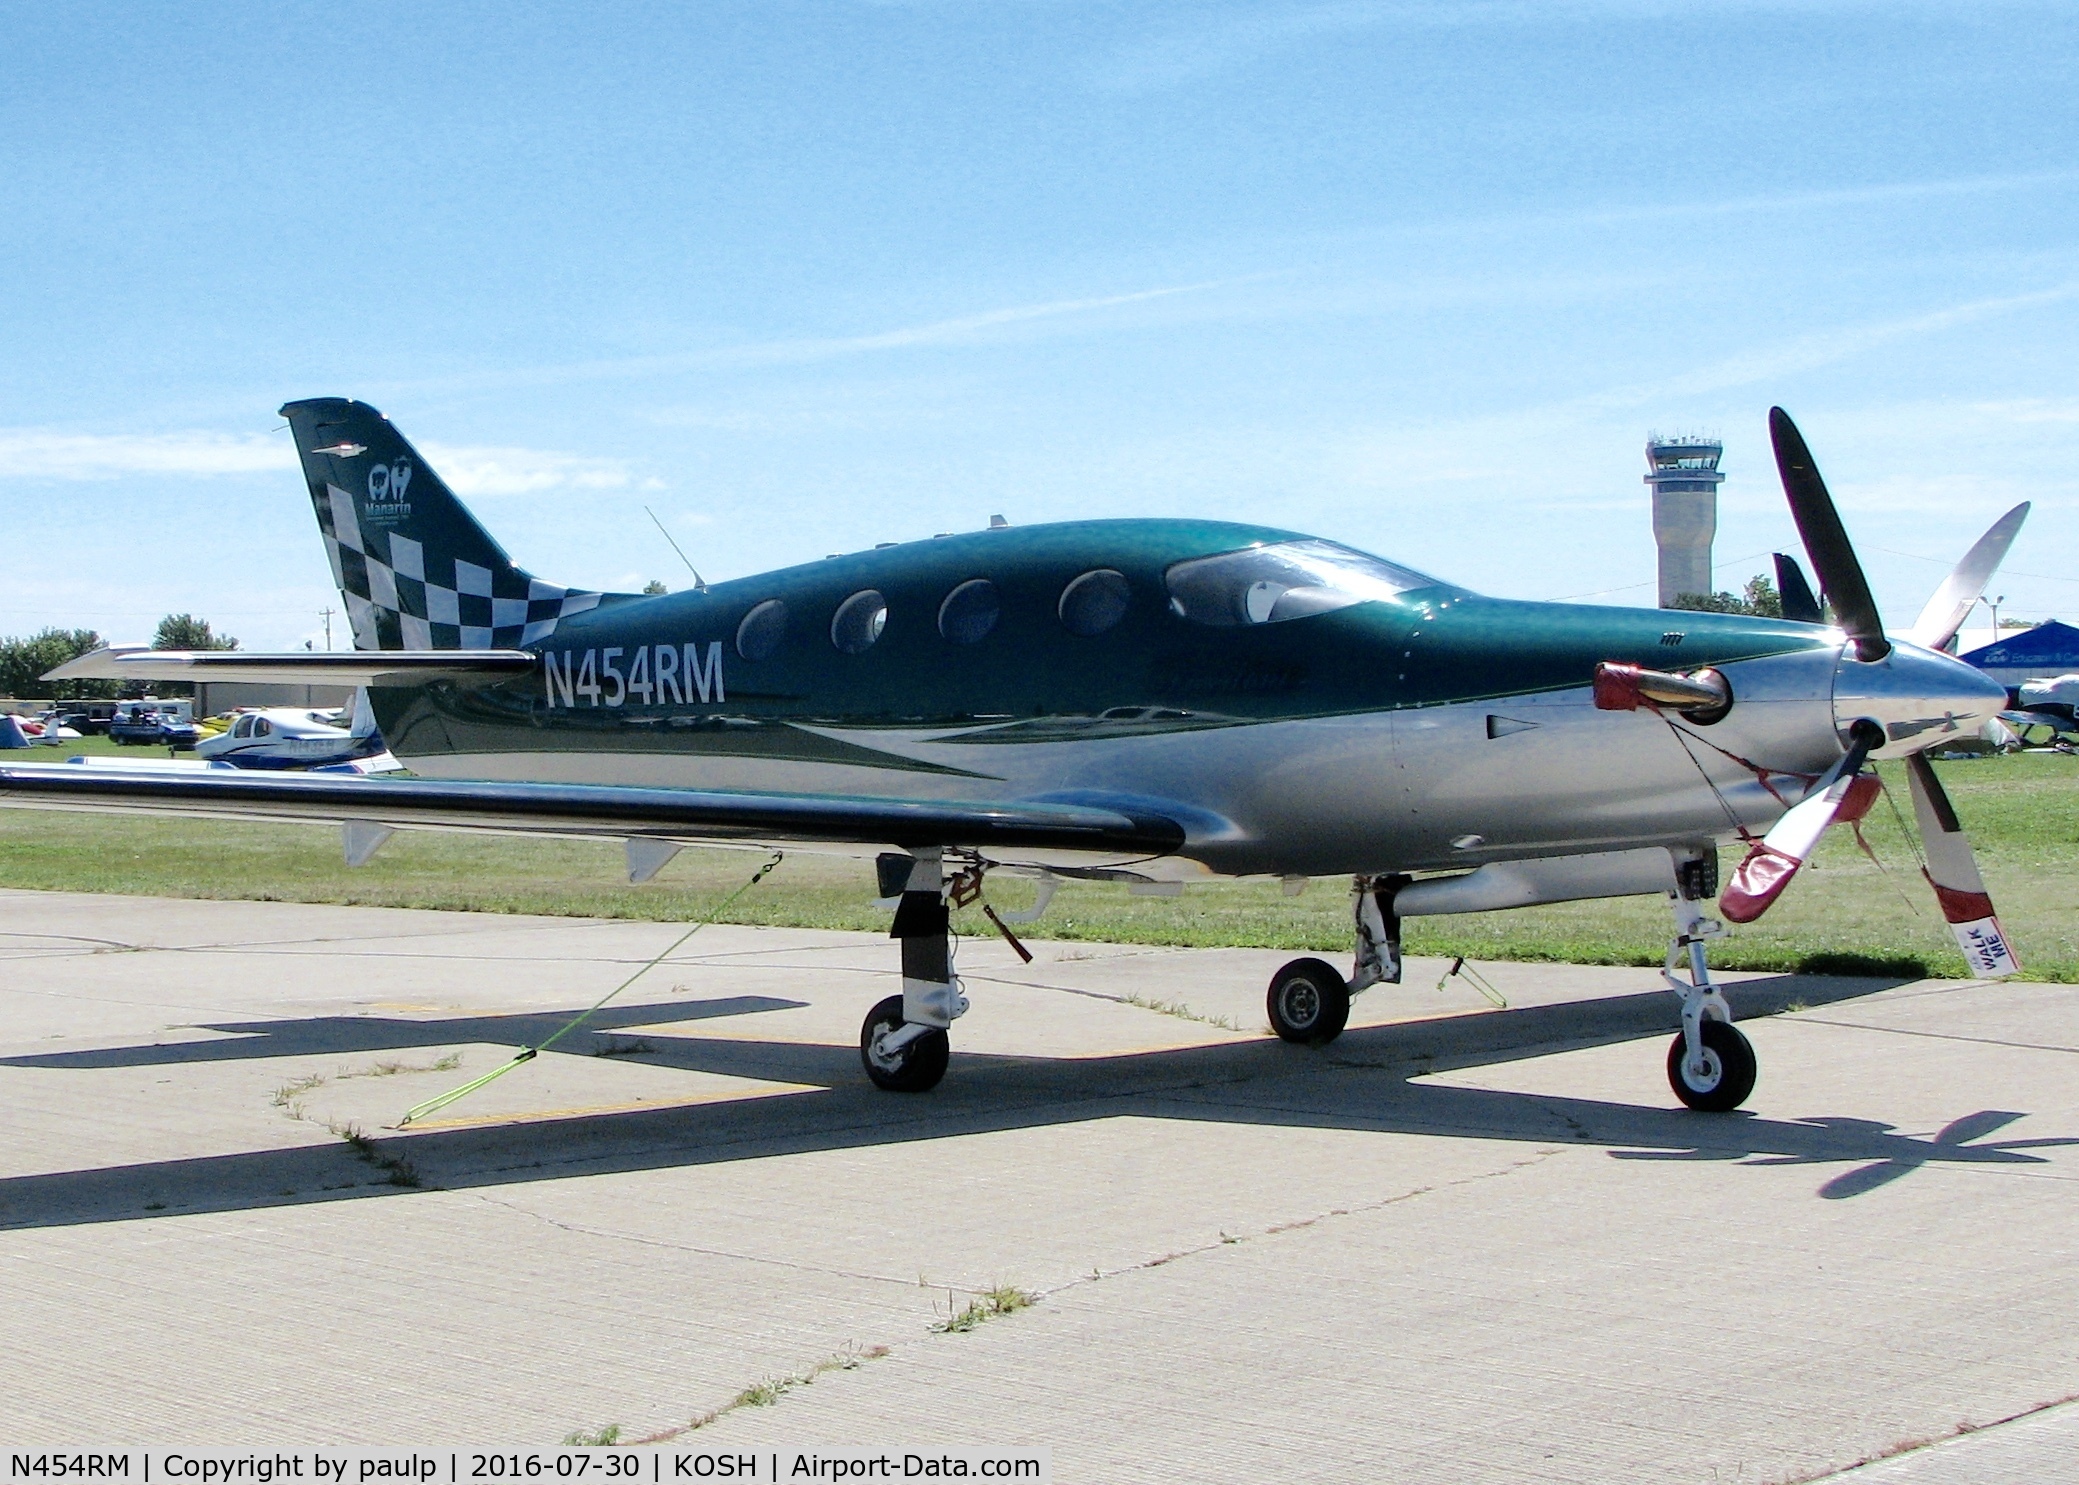 N454RM, 2007 AIR Epic LT C/N 111, At AirVenture 2016.